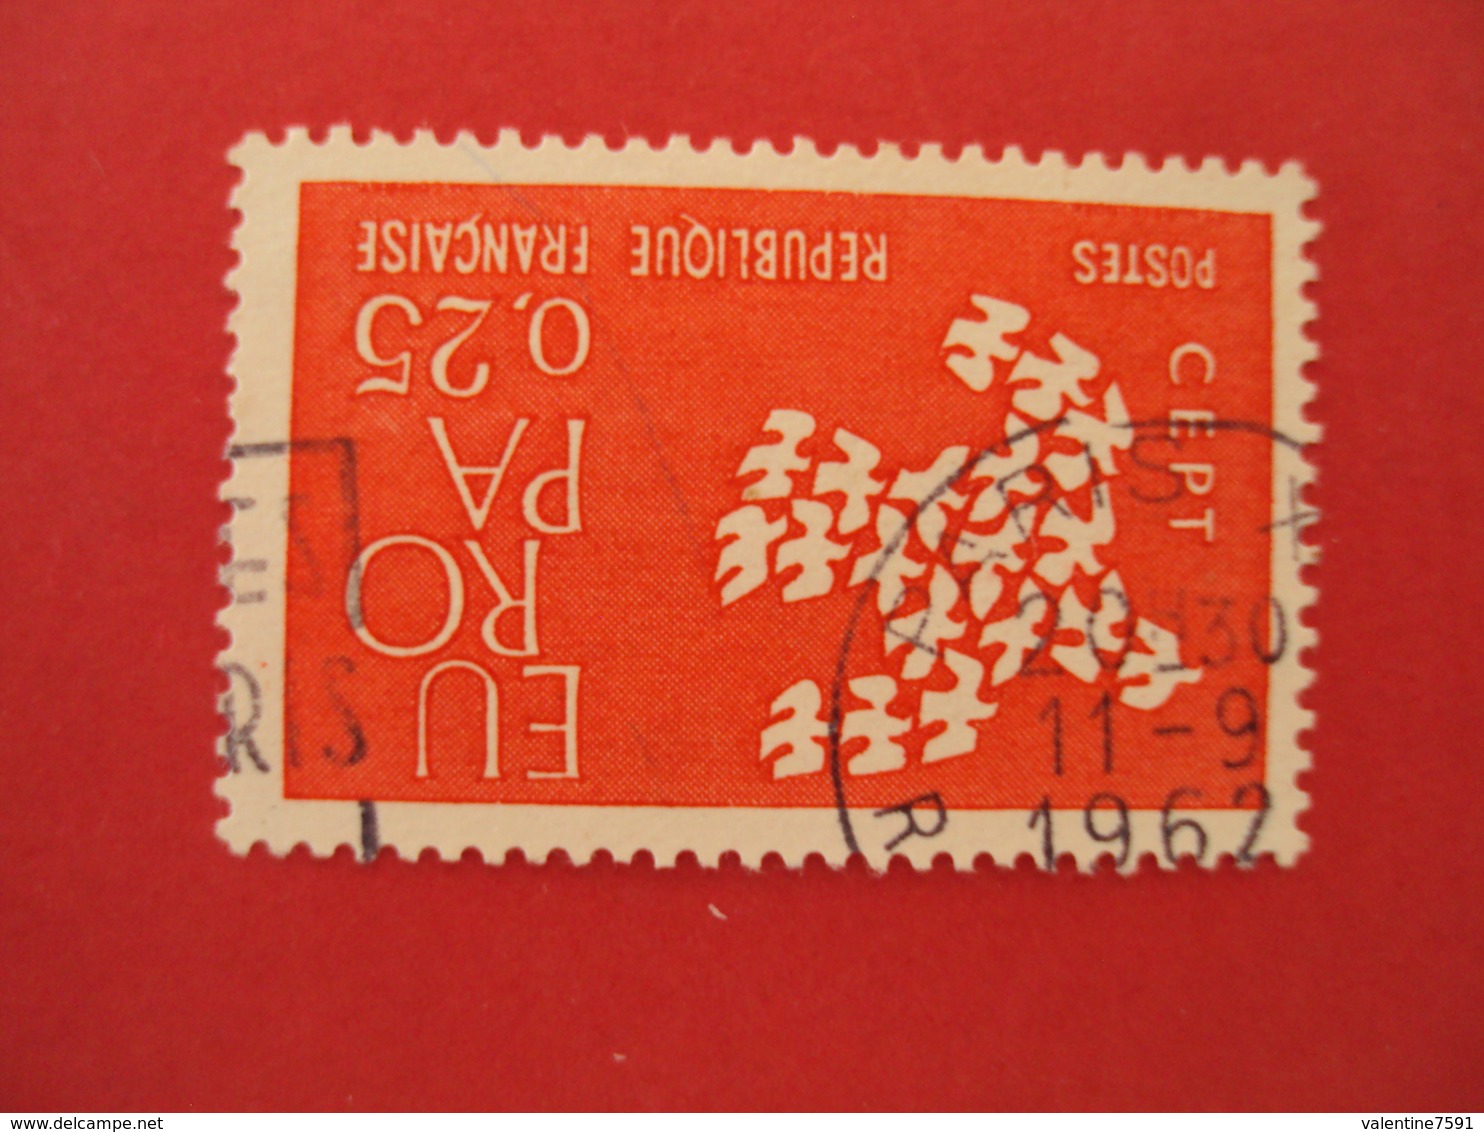 1960  Oblitéré   N° 1309  "  EUROPA 0.25 Rouge  "    Net   0.30     "paris"" - 1961 Marianne Of Cocteau